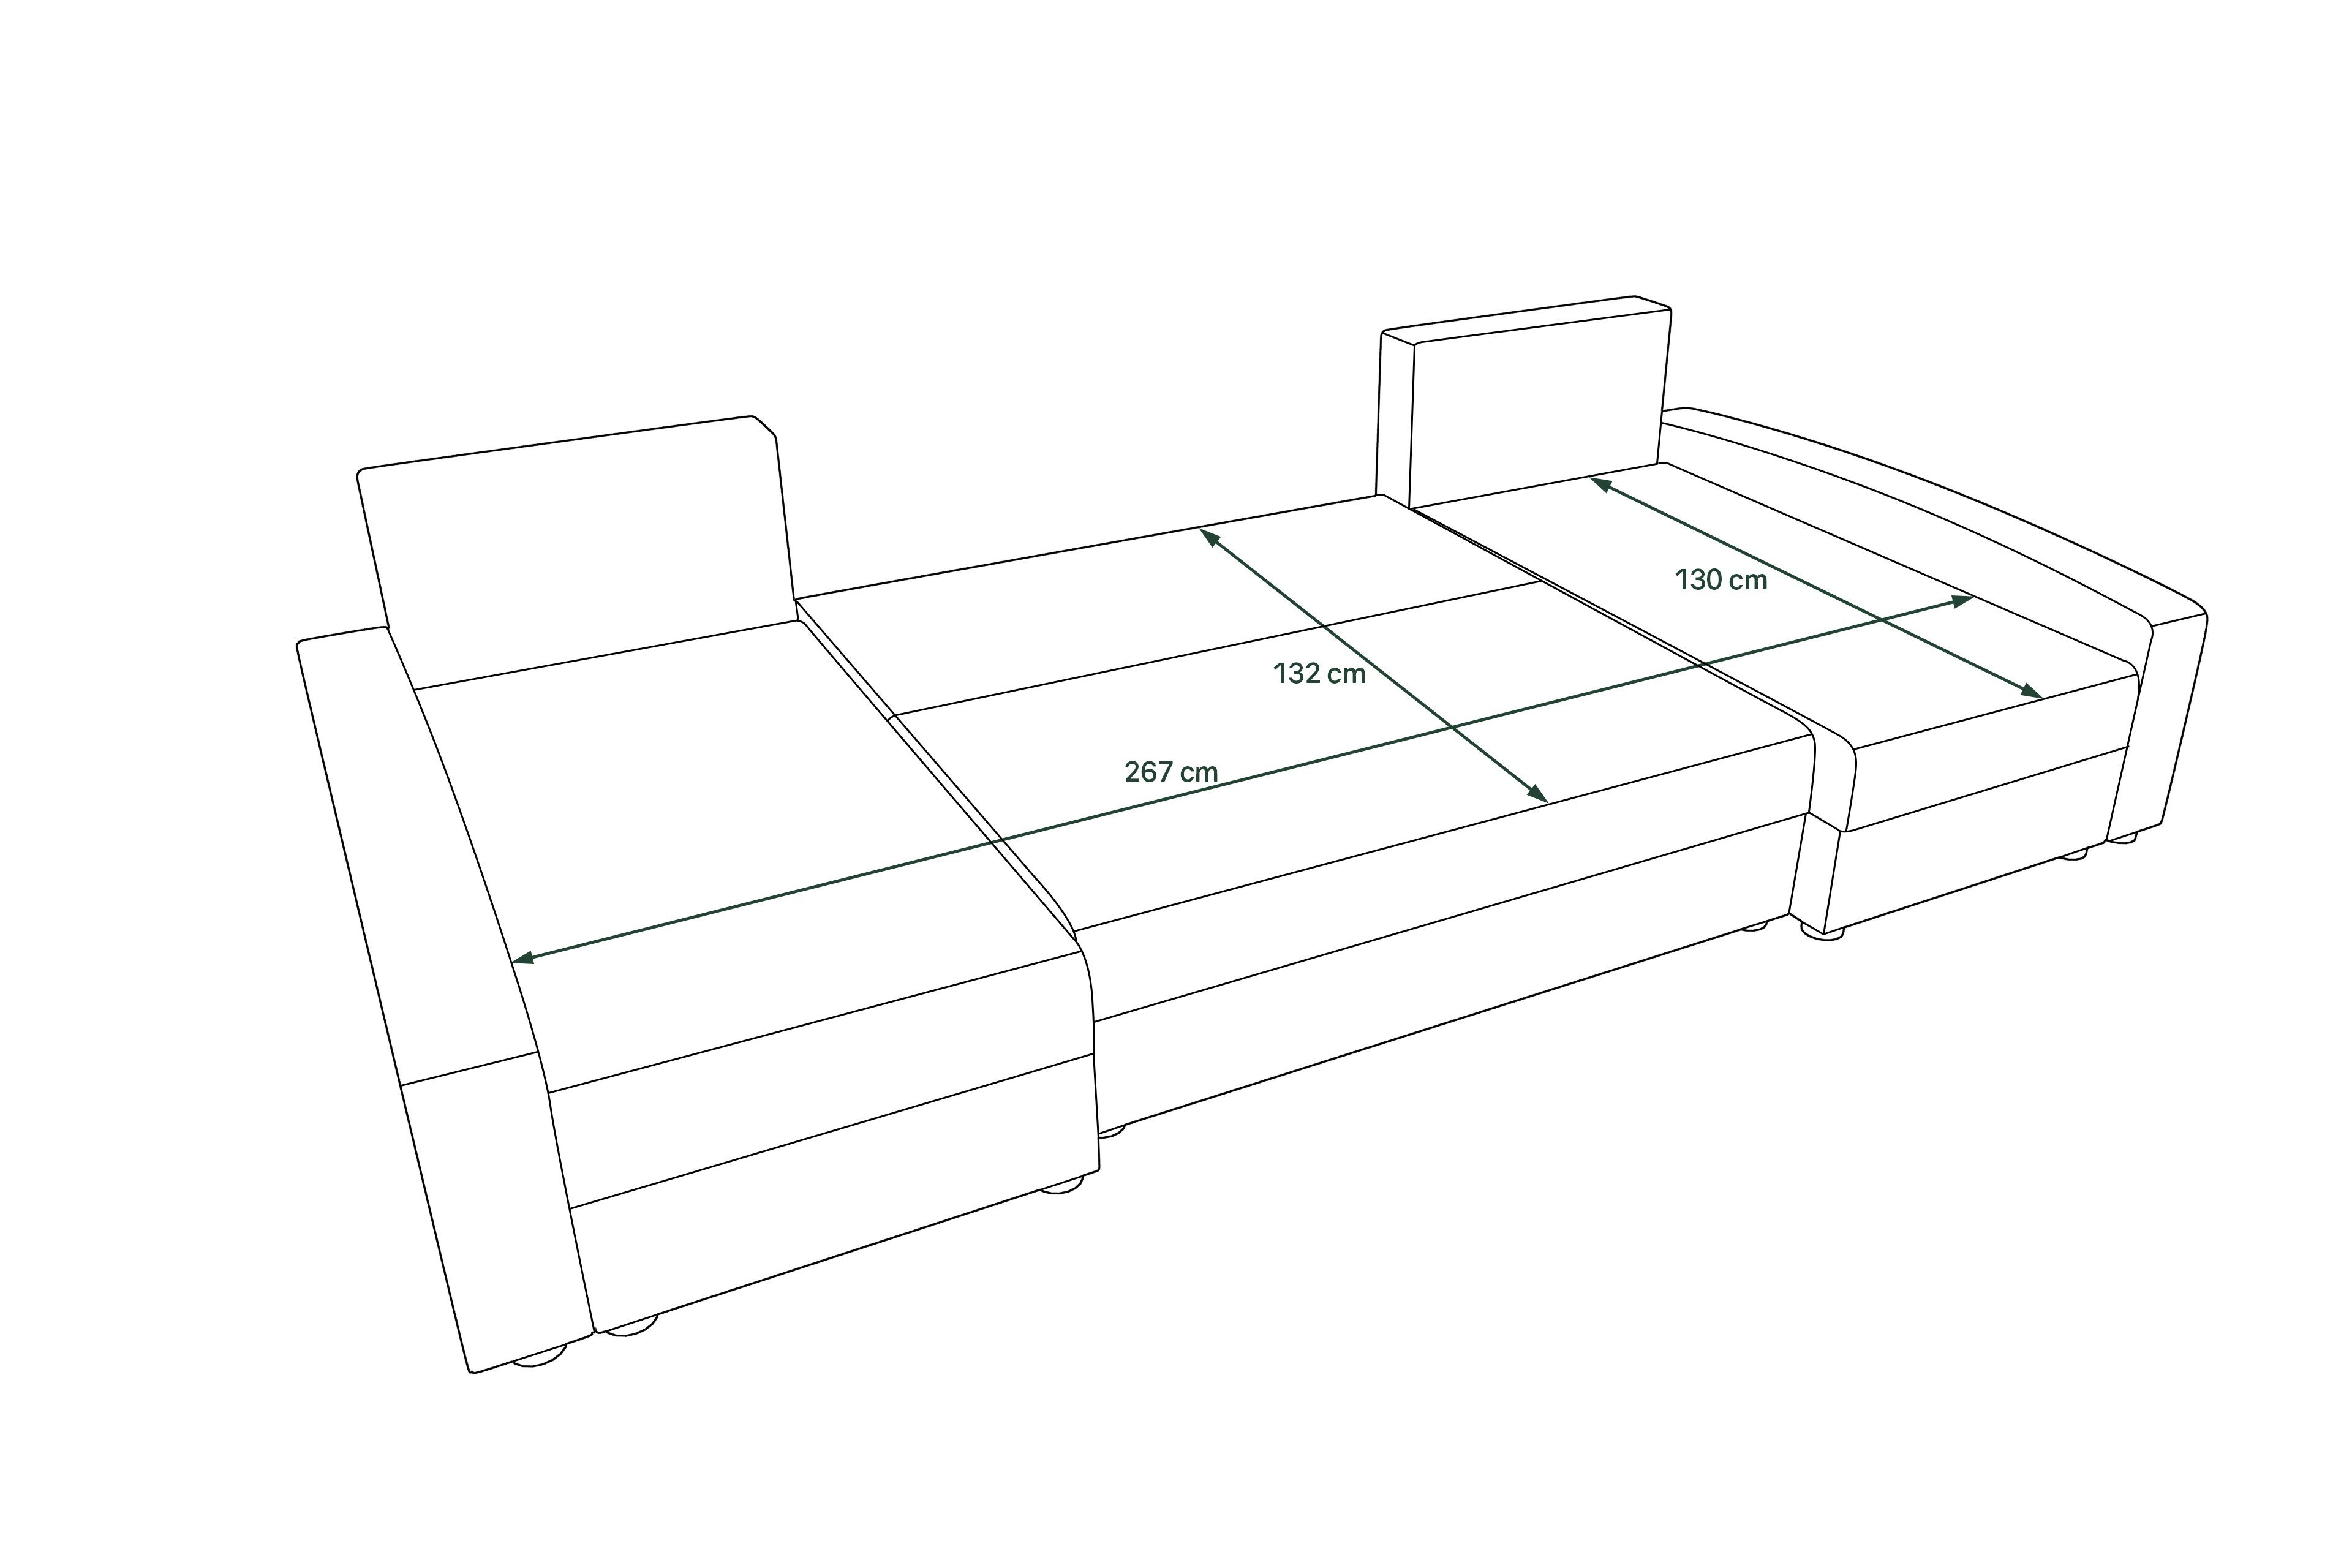 Addison, mit Wohnlandschaft U-Form, Sofa, Design Stylefy Sitzkomfort, Modern mit Bettkasten, Bettfunktion, Eckcouch,